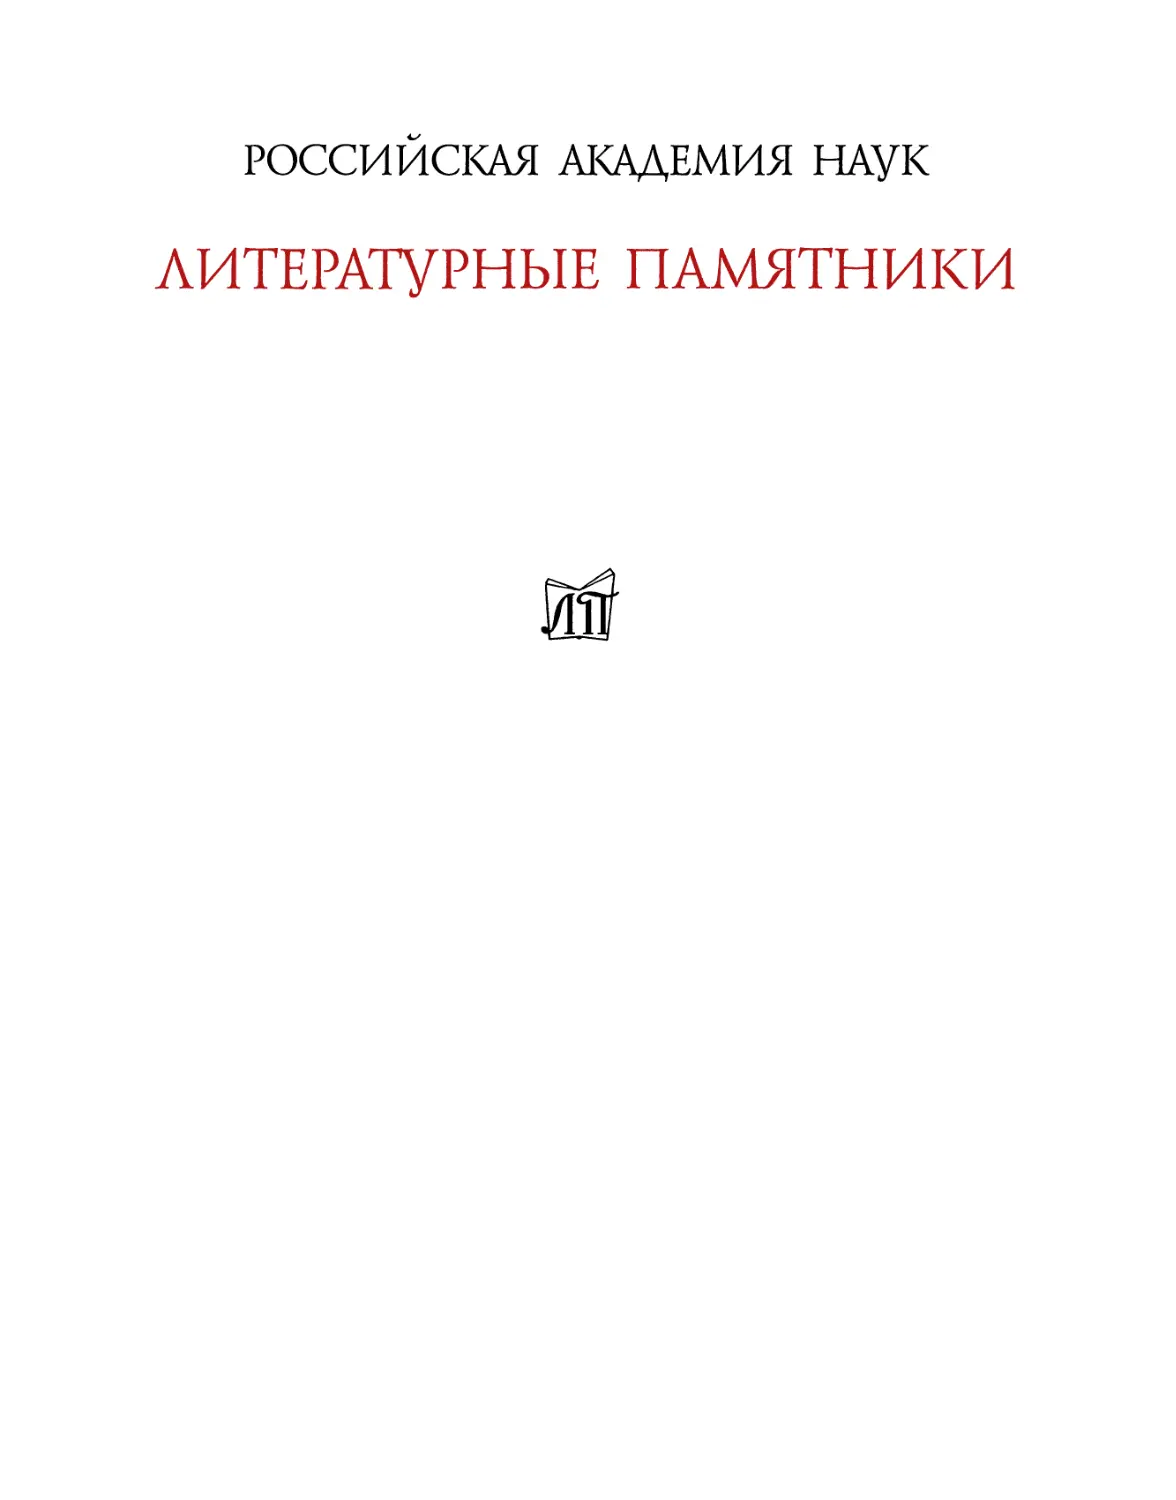 Пелгримация, или Путешественник Ипполита Вишенского. 1707-1709 - 2019